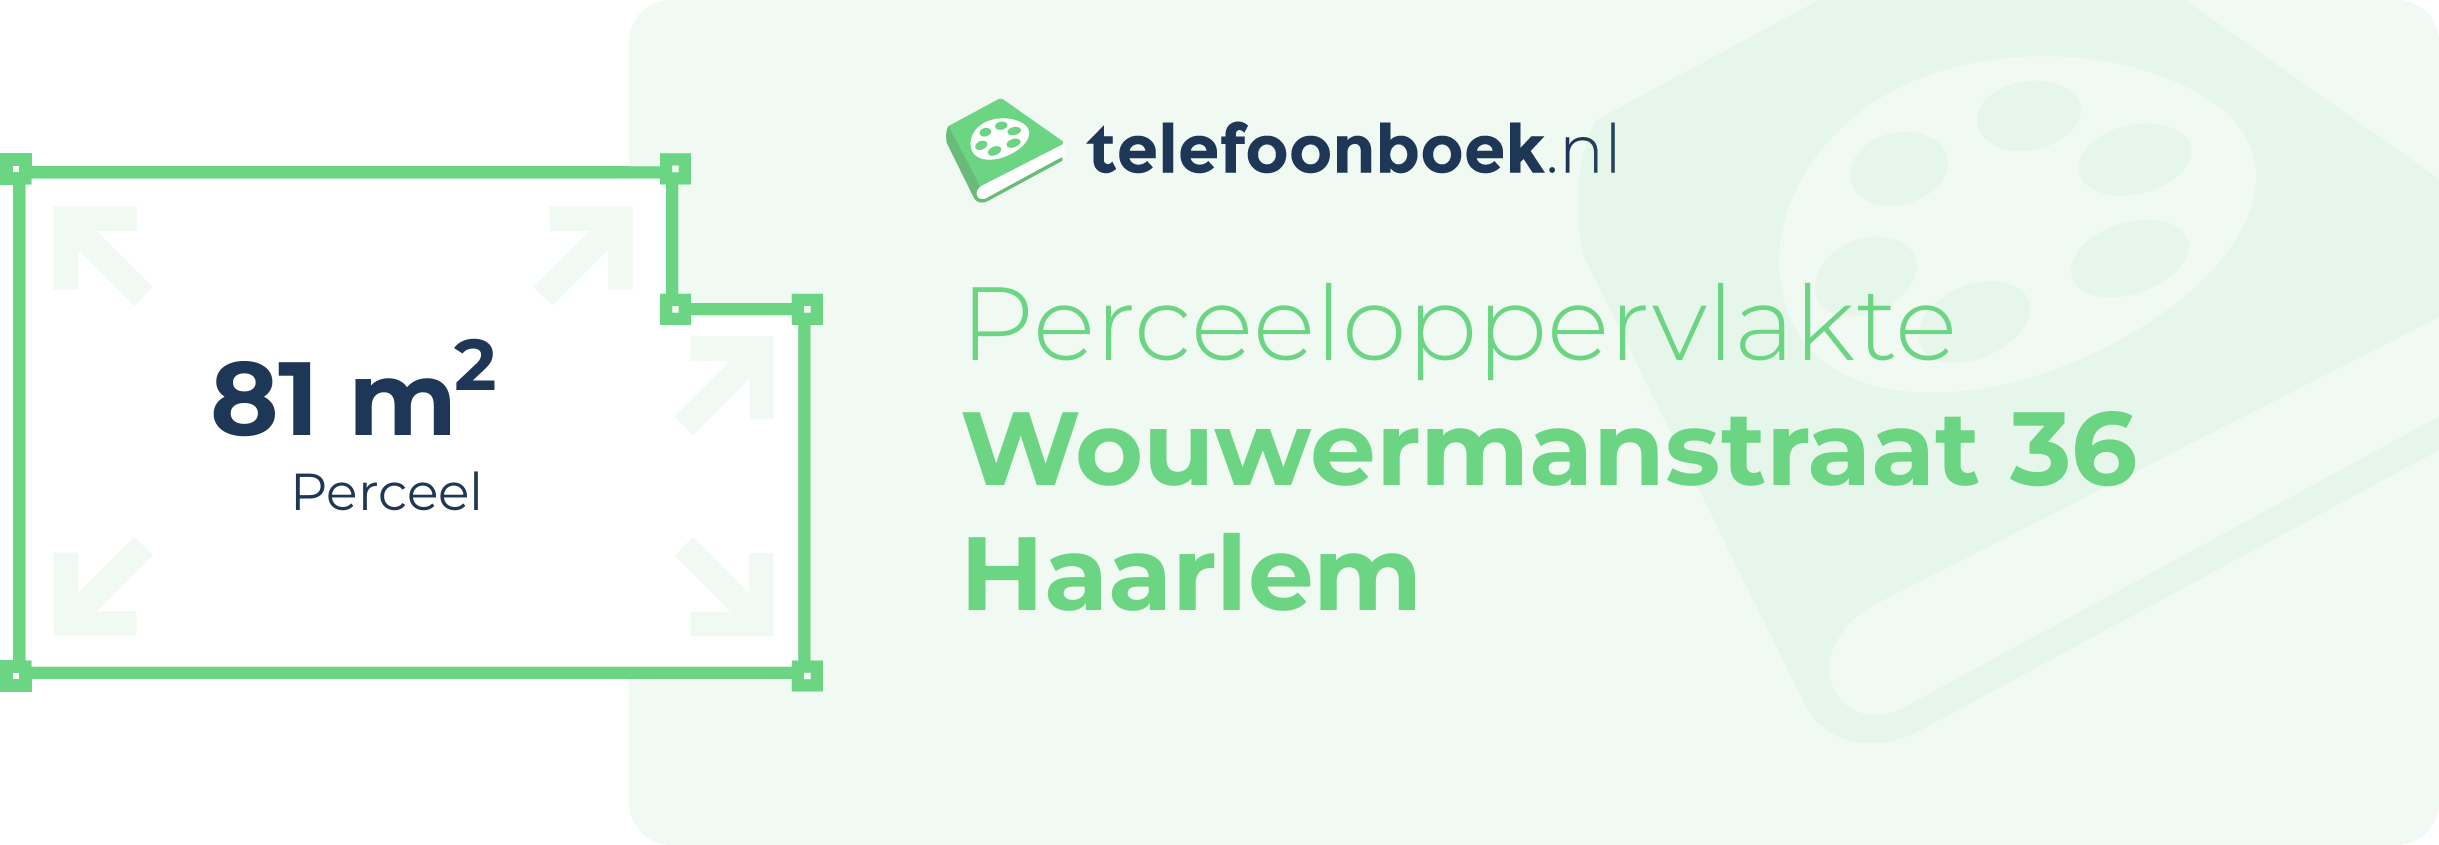 Perceeloppervlakte Wouwermanstraat 36 Haarlem